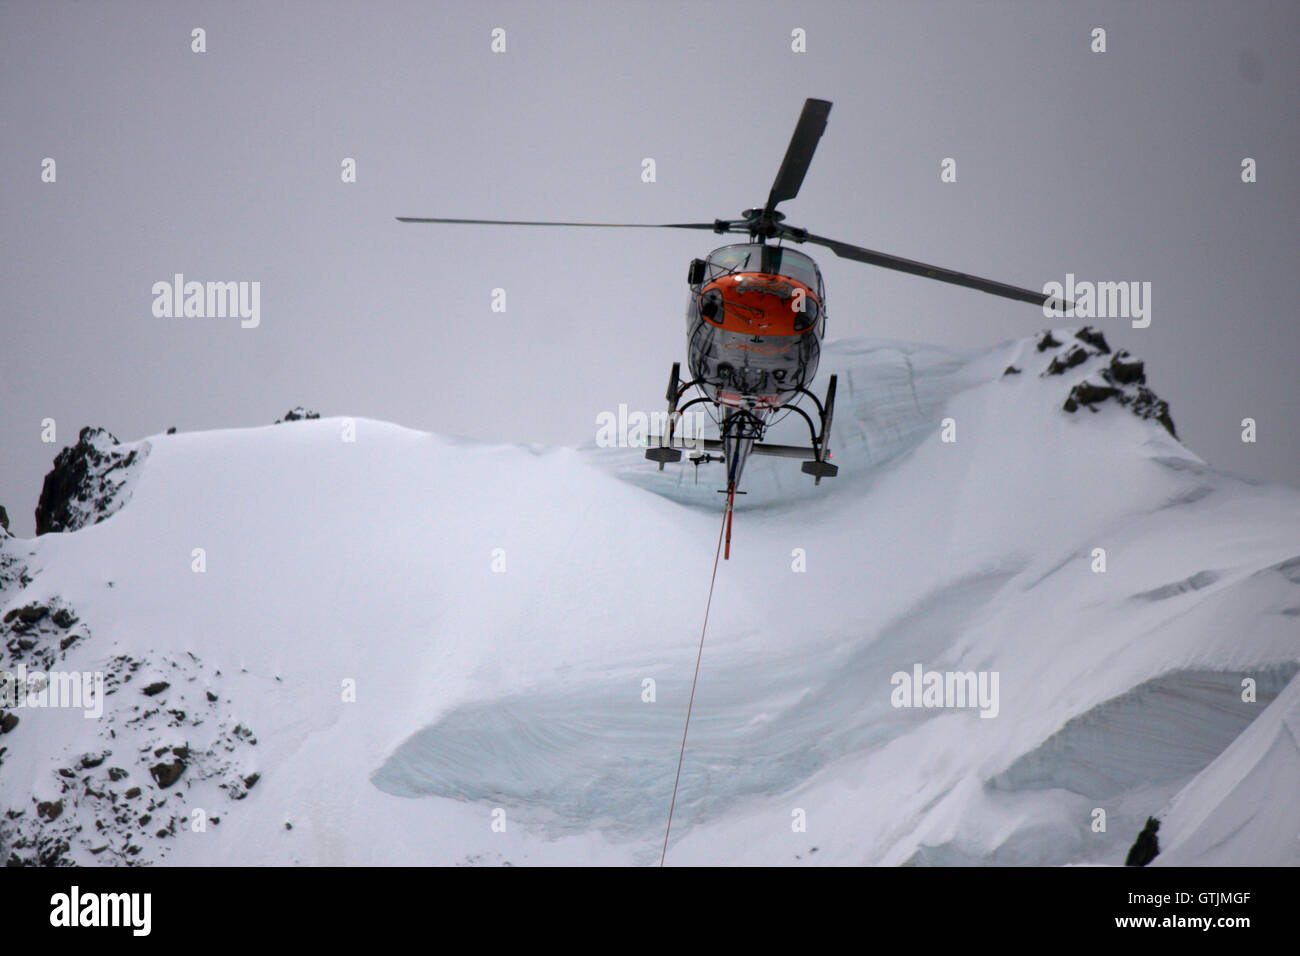 Hubschrauber, Mont Blanc-Massiv, Chamonix, Frankreich. Stock Photo